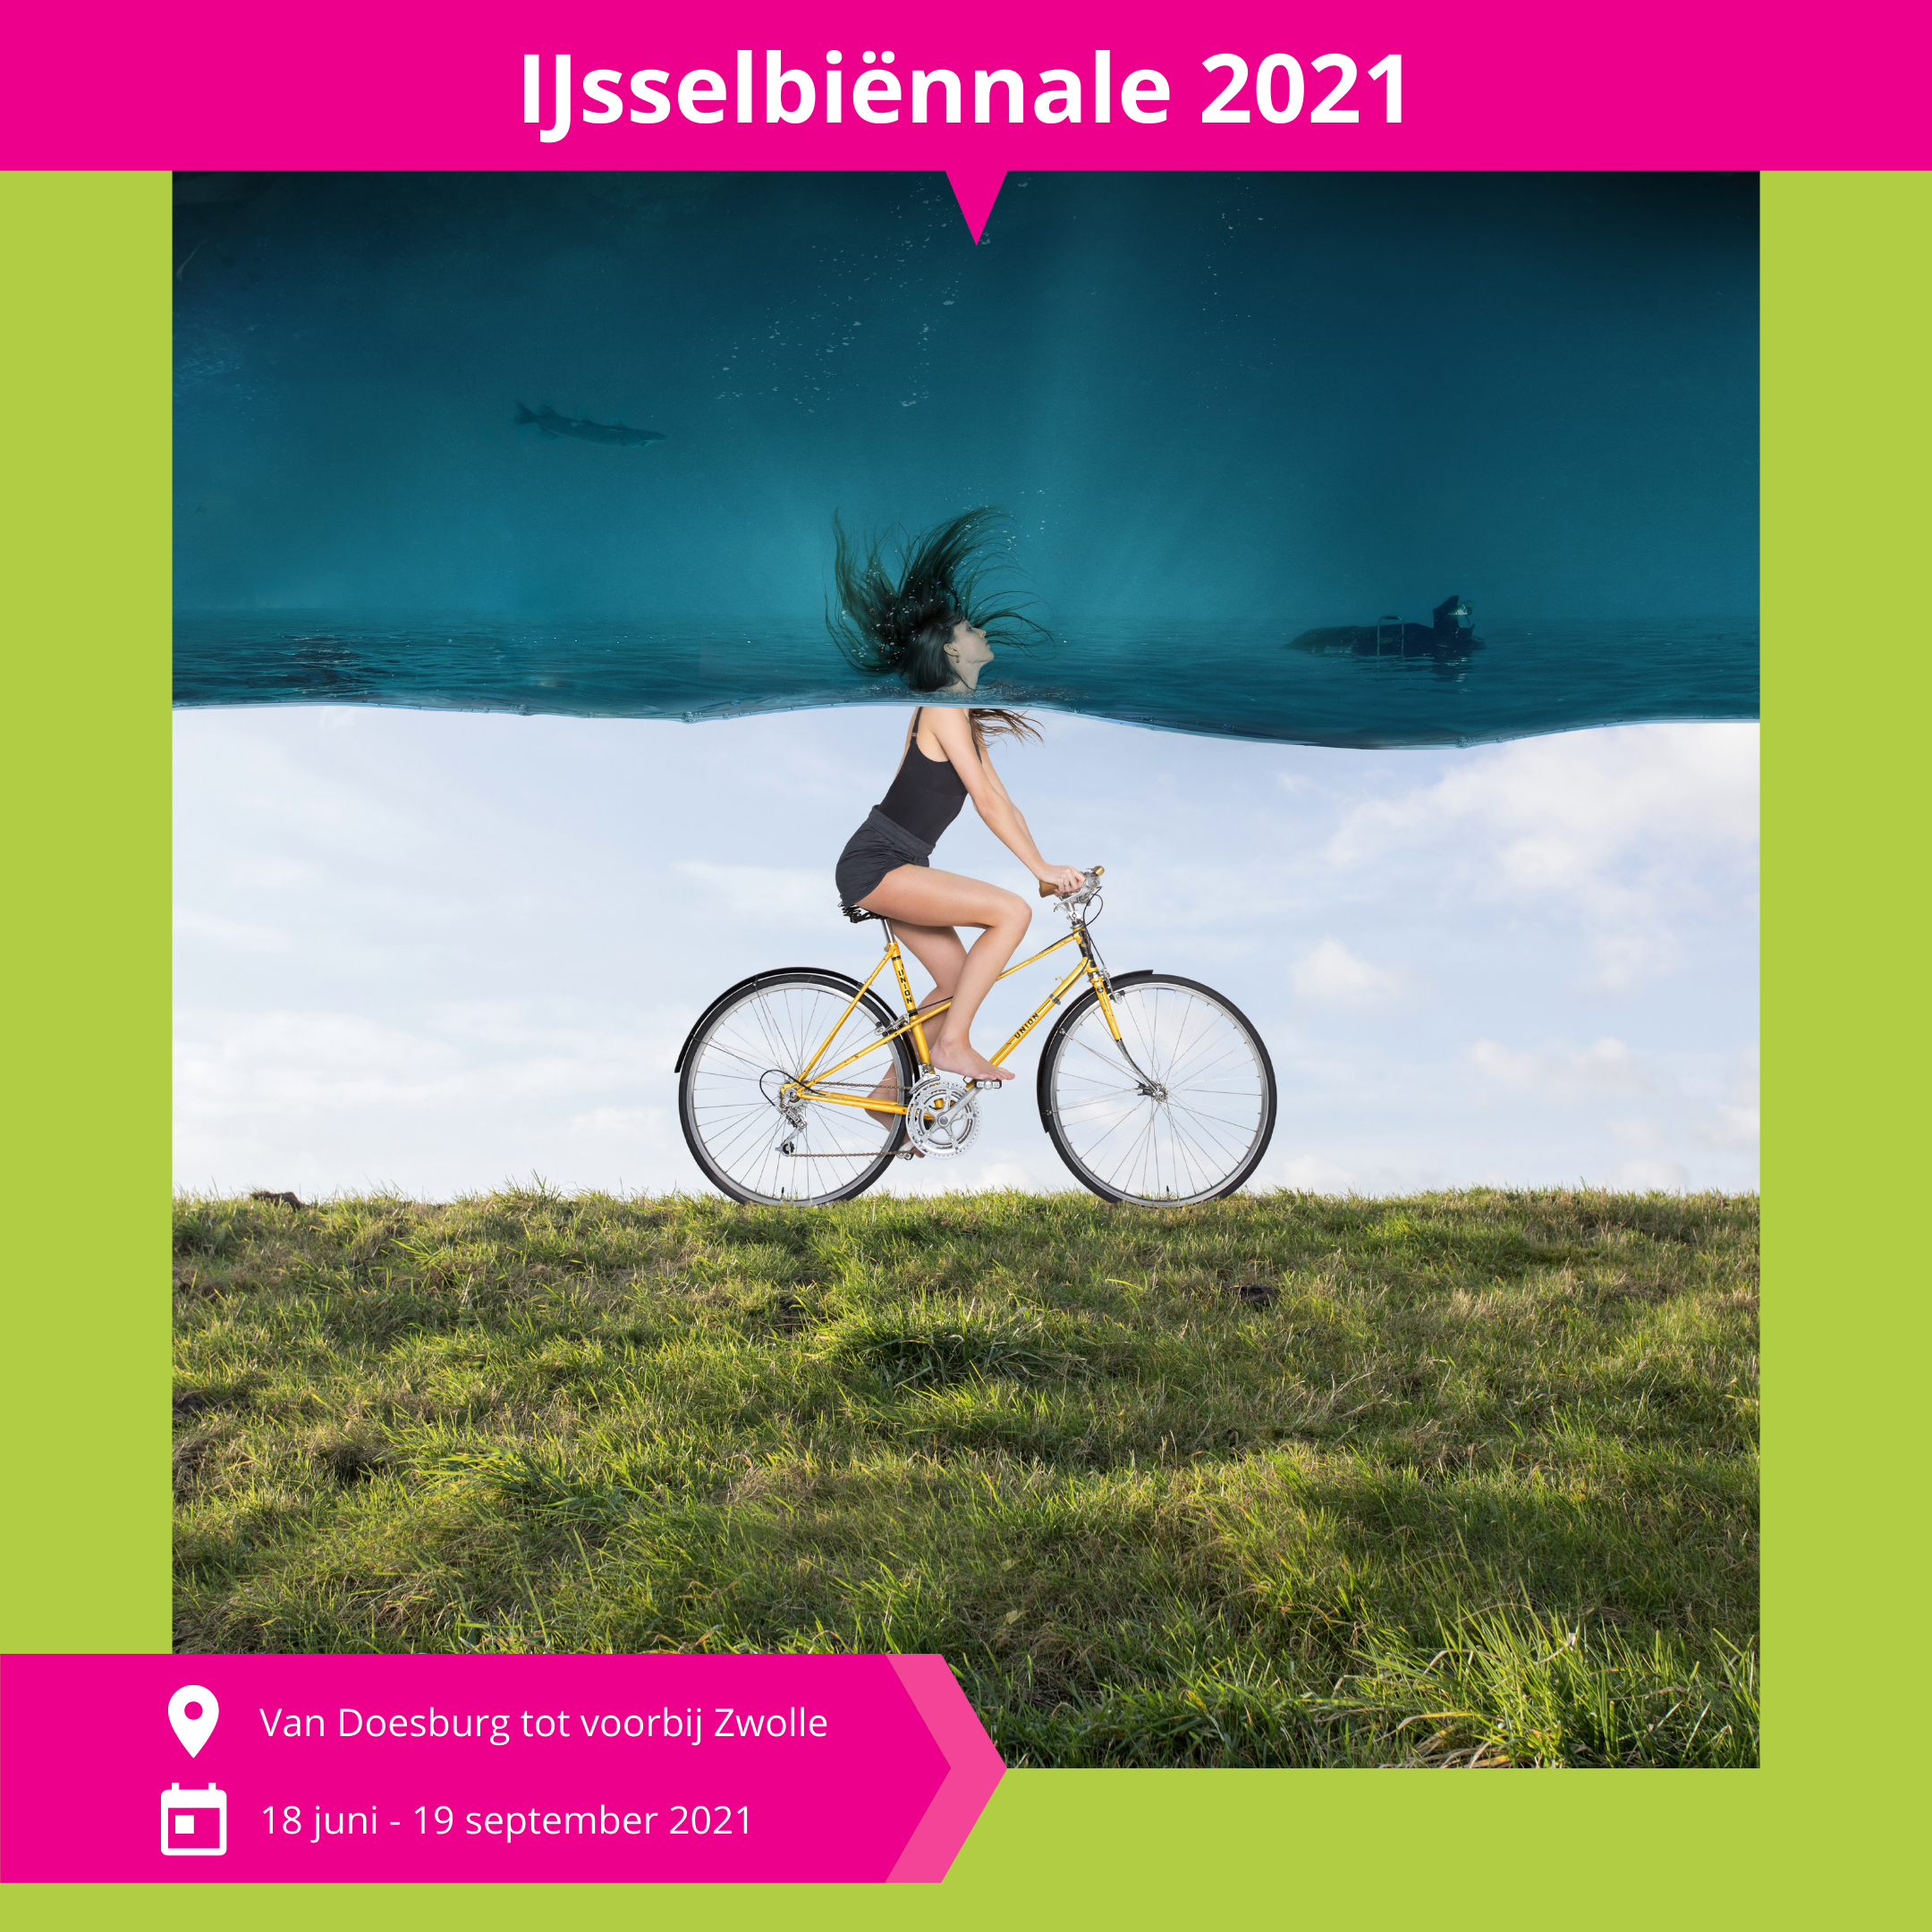 De_Vrijetijdkrant_IJsselbiennale_2021_INSTA